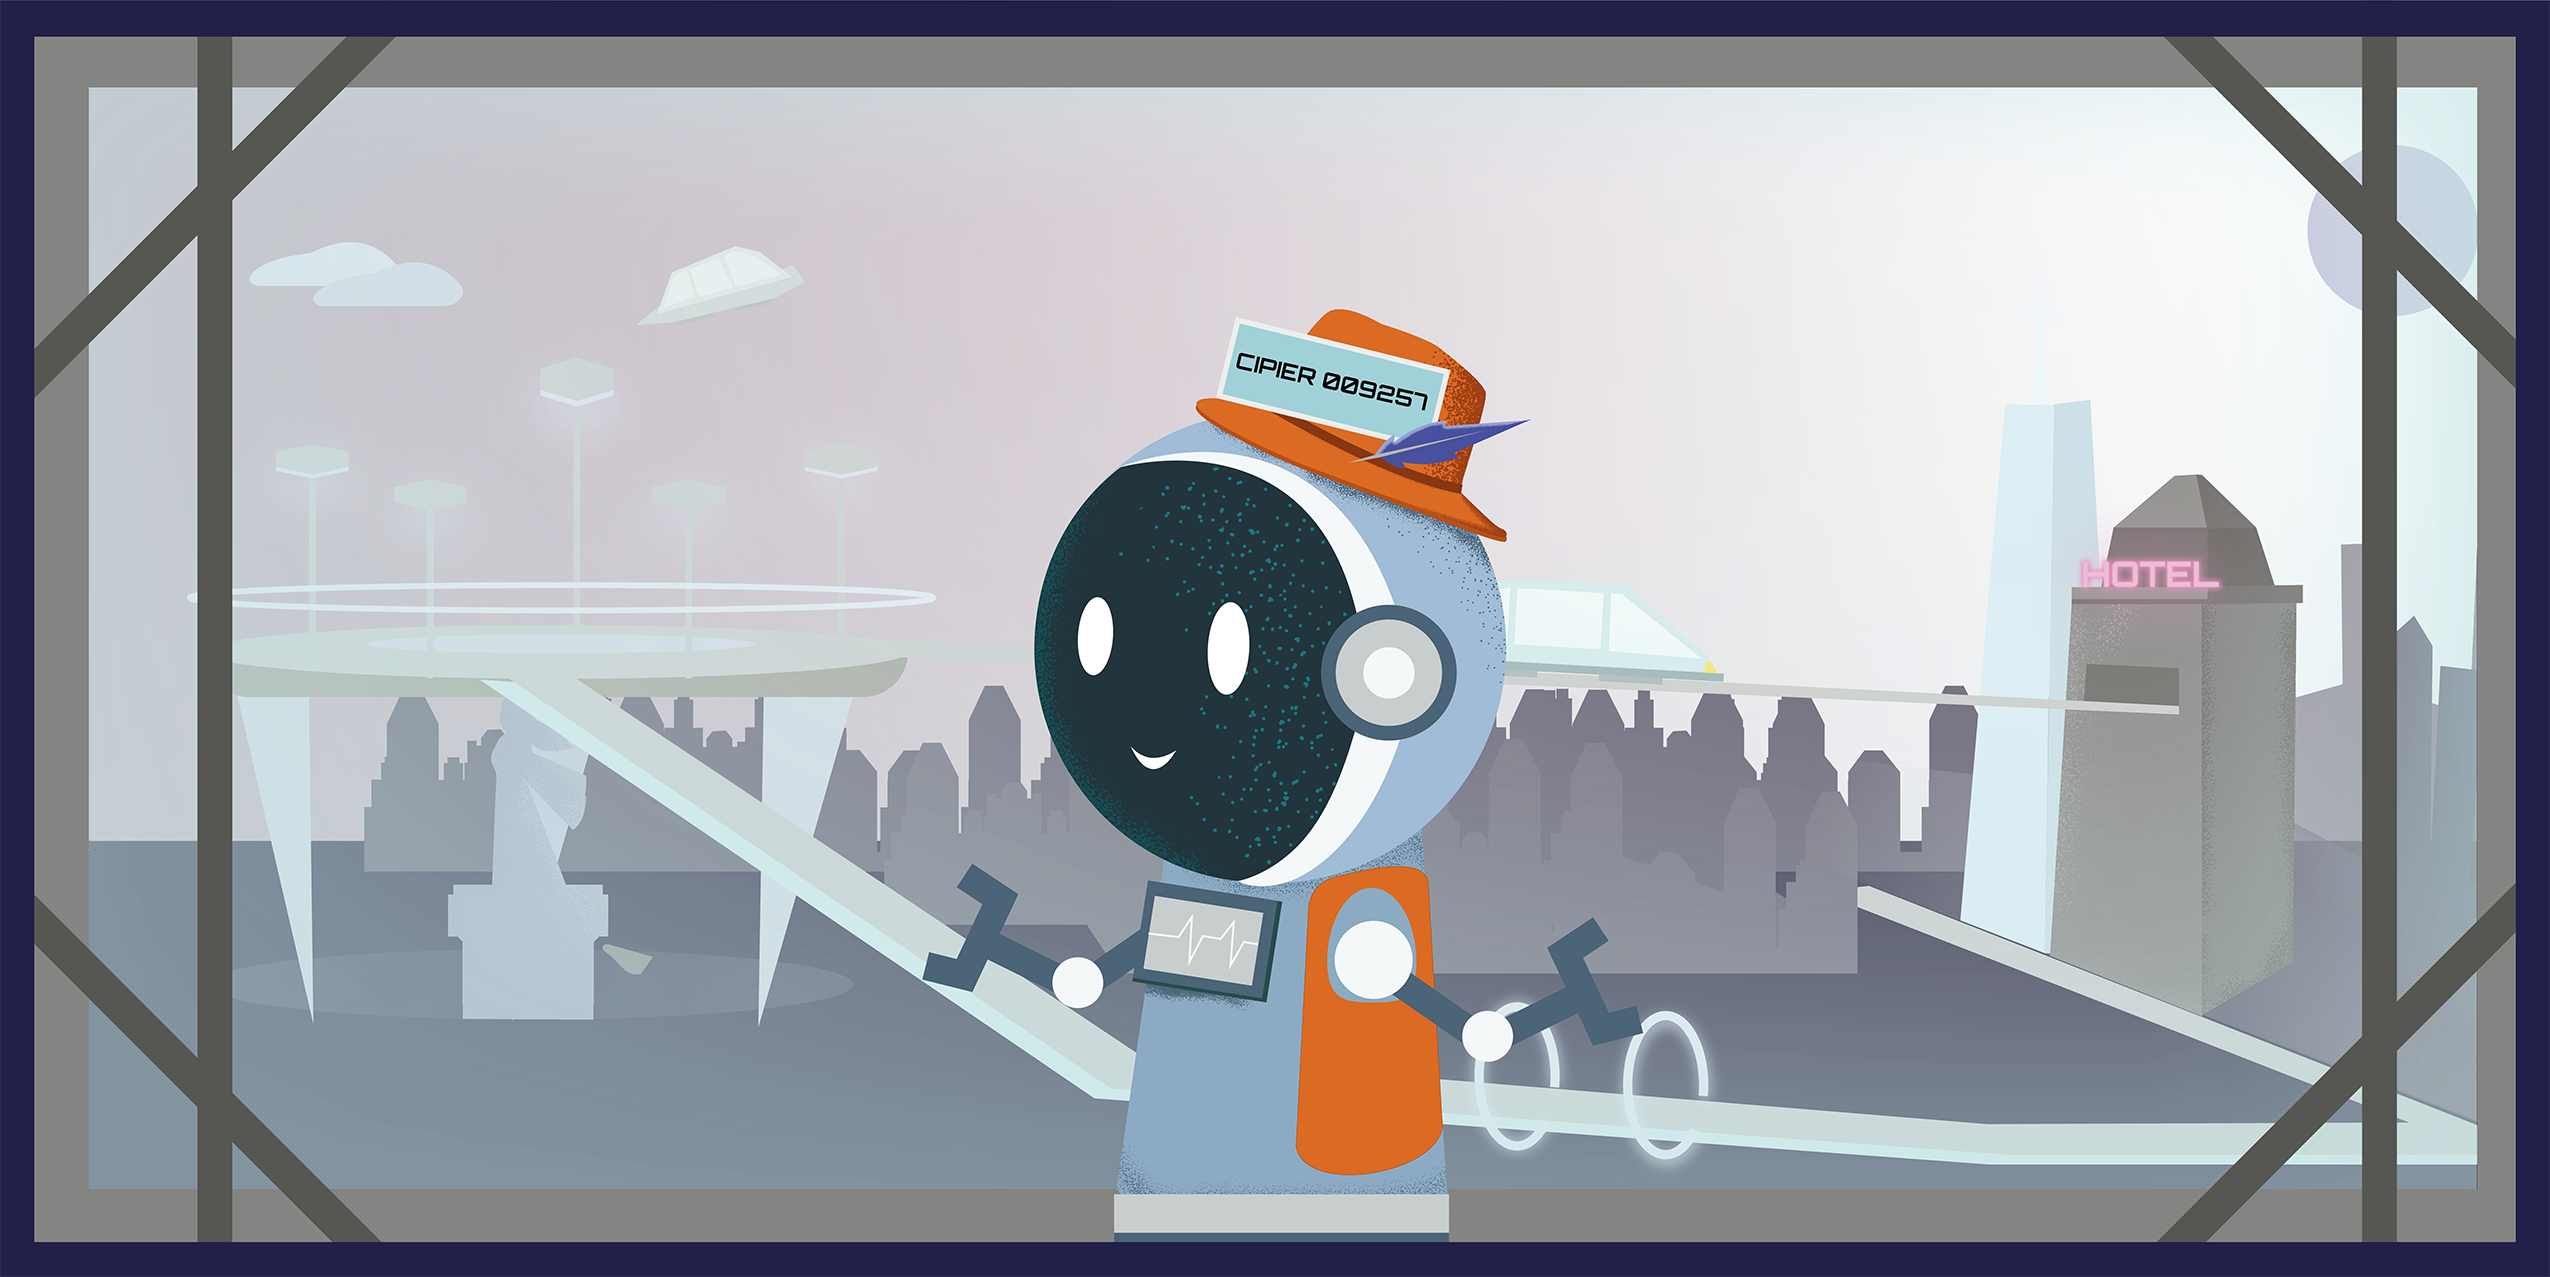 Afbeelding uit het spel van Missie 3014 met robotcipier en in de achtergrond een stad.